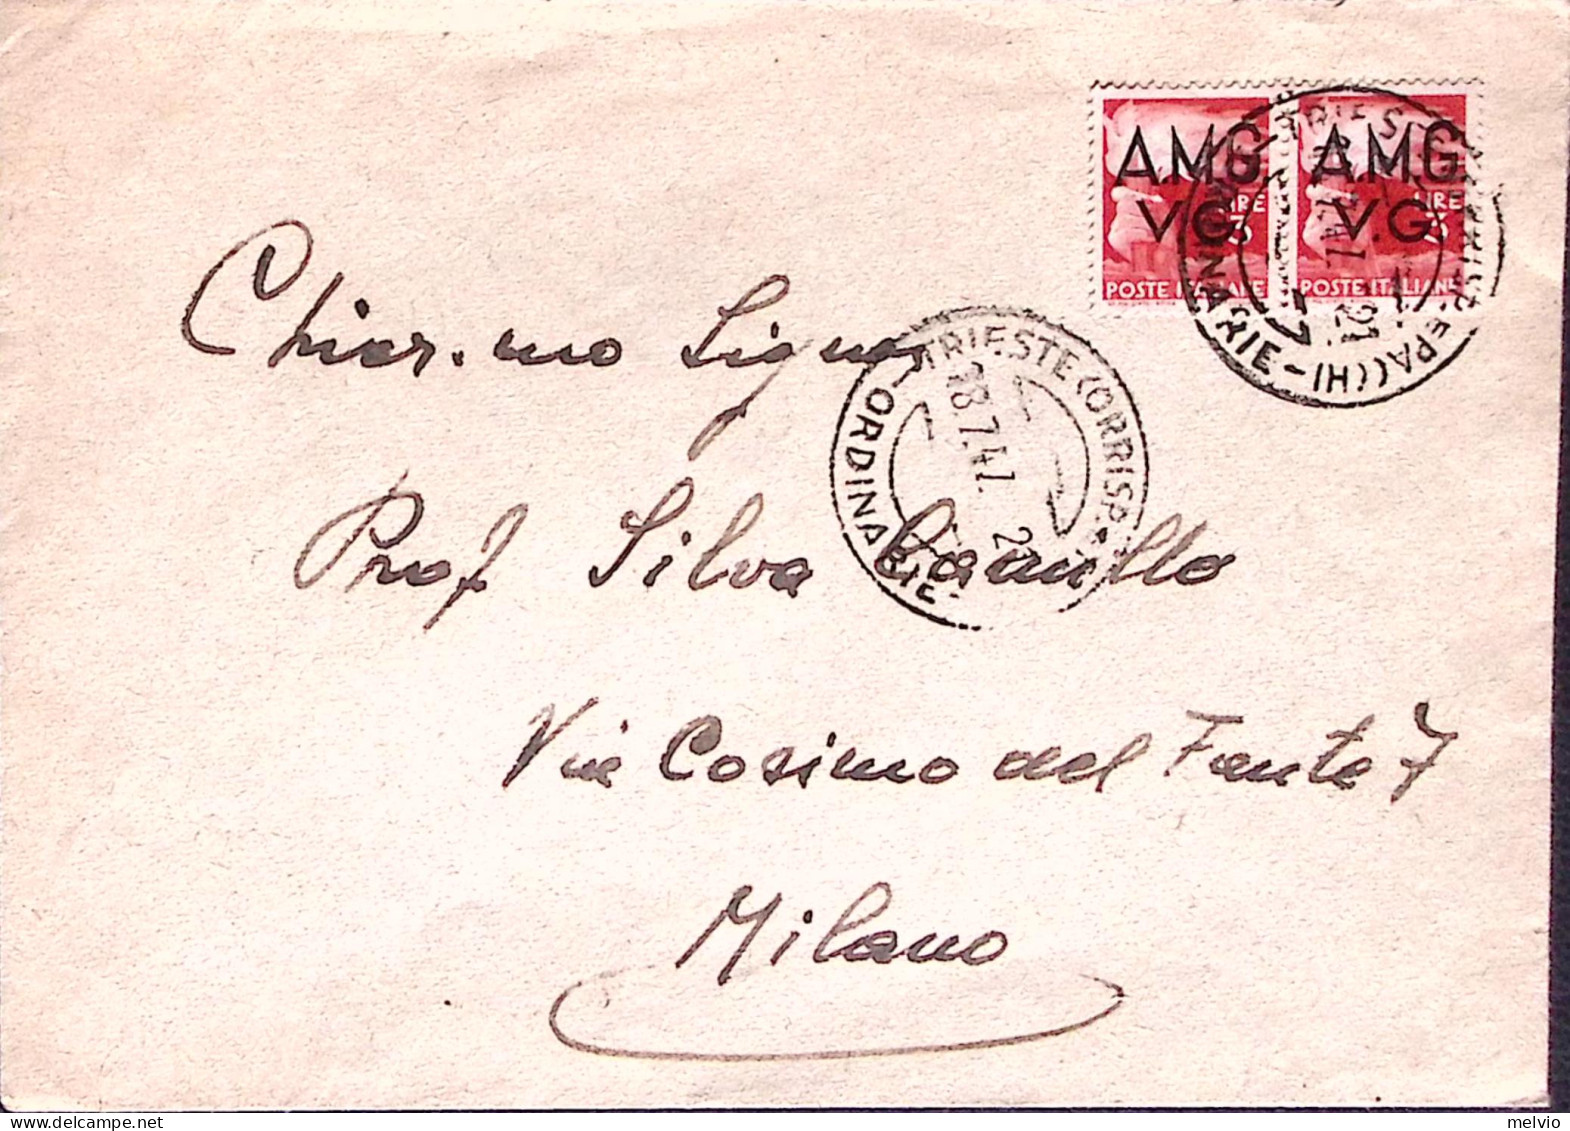 1947-A.M.G.-V.G. Democratica Coppia Lire 3, Su Busta Trieste (18.7) - Marcofilía